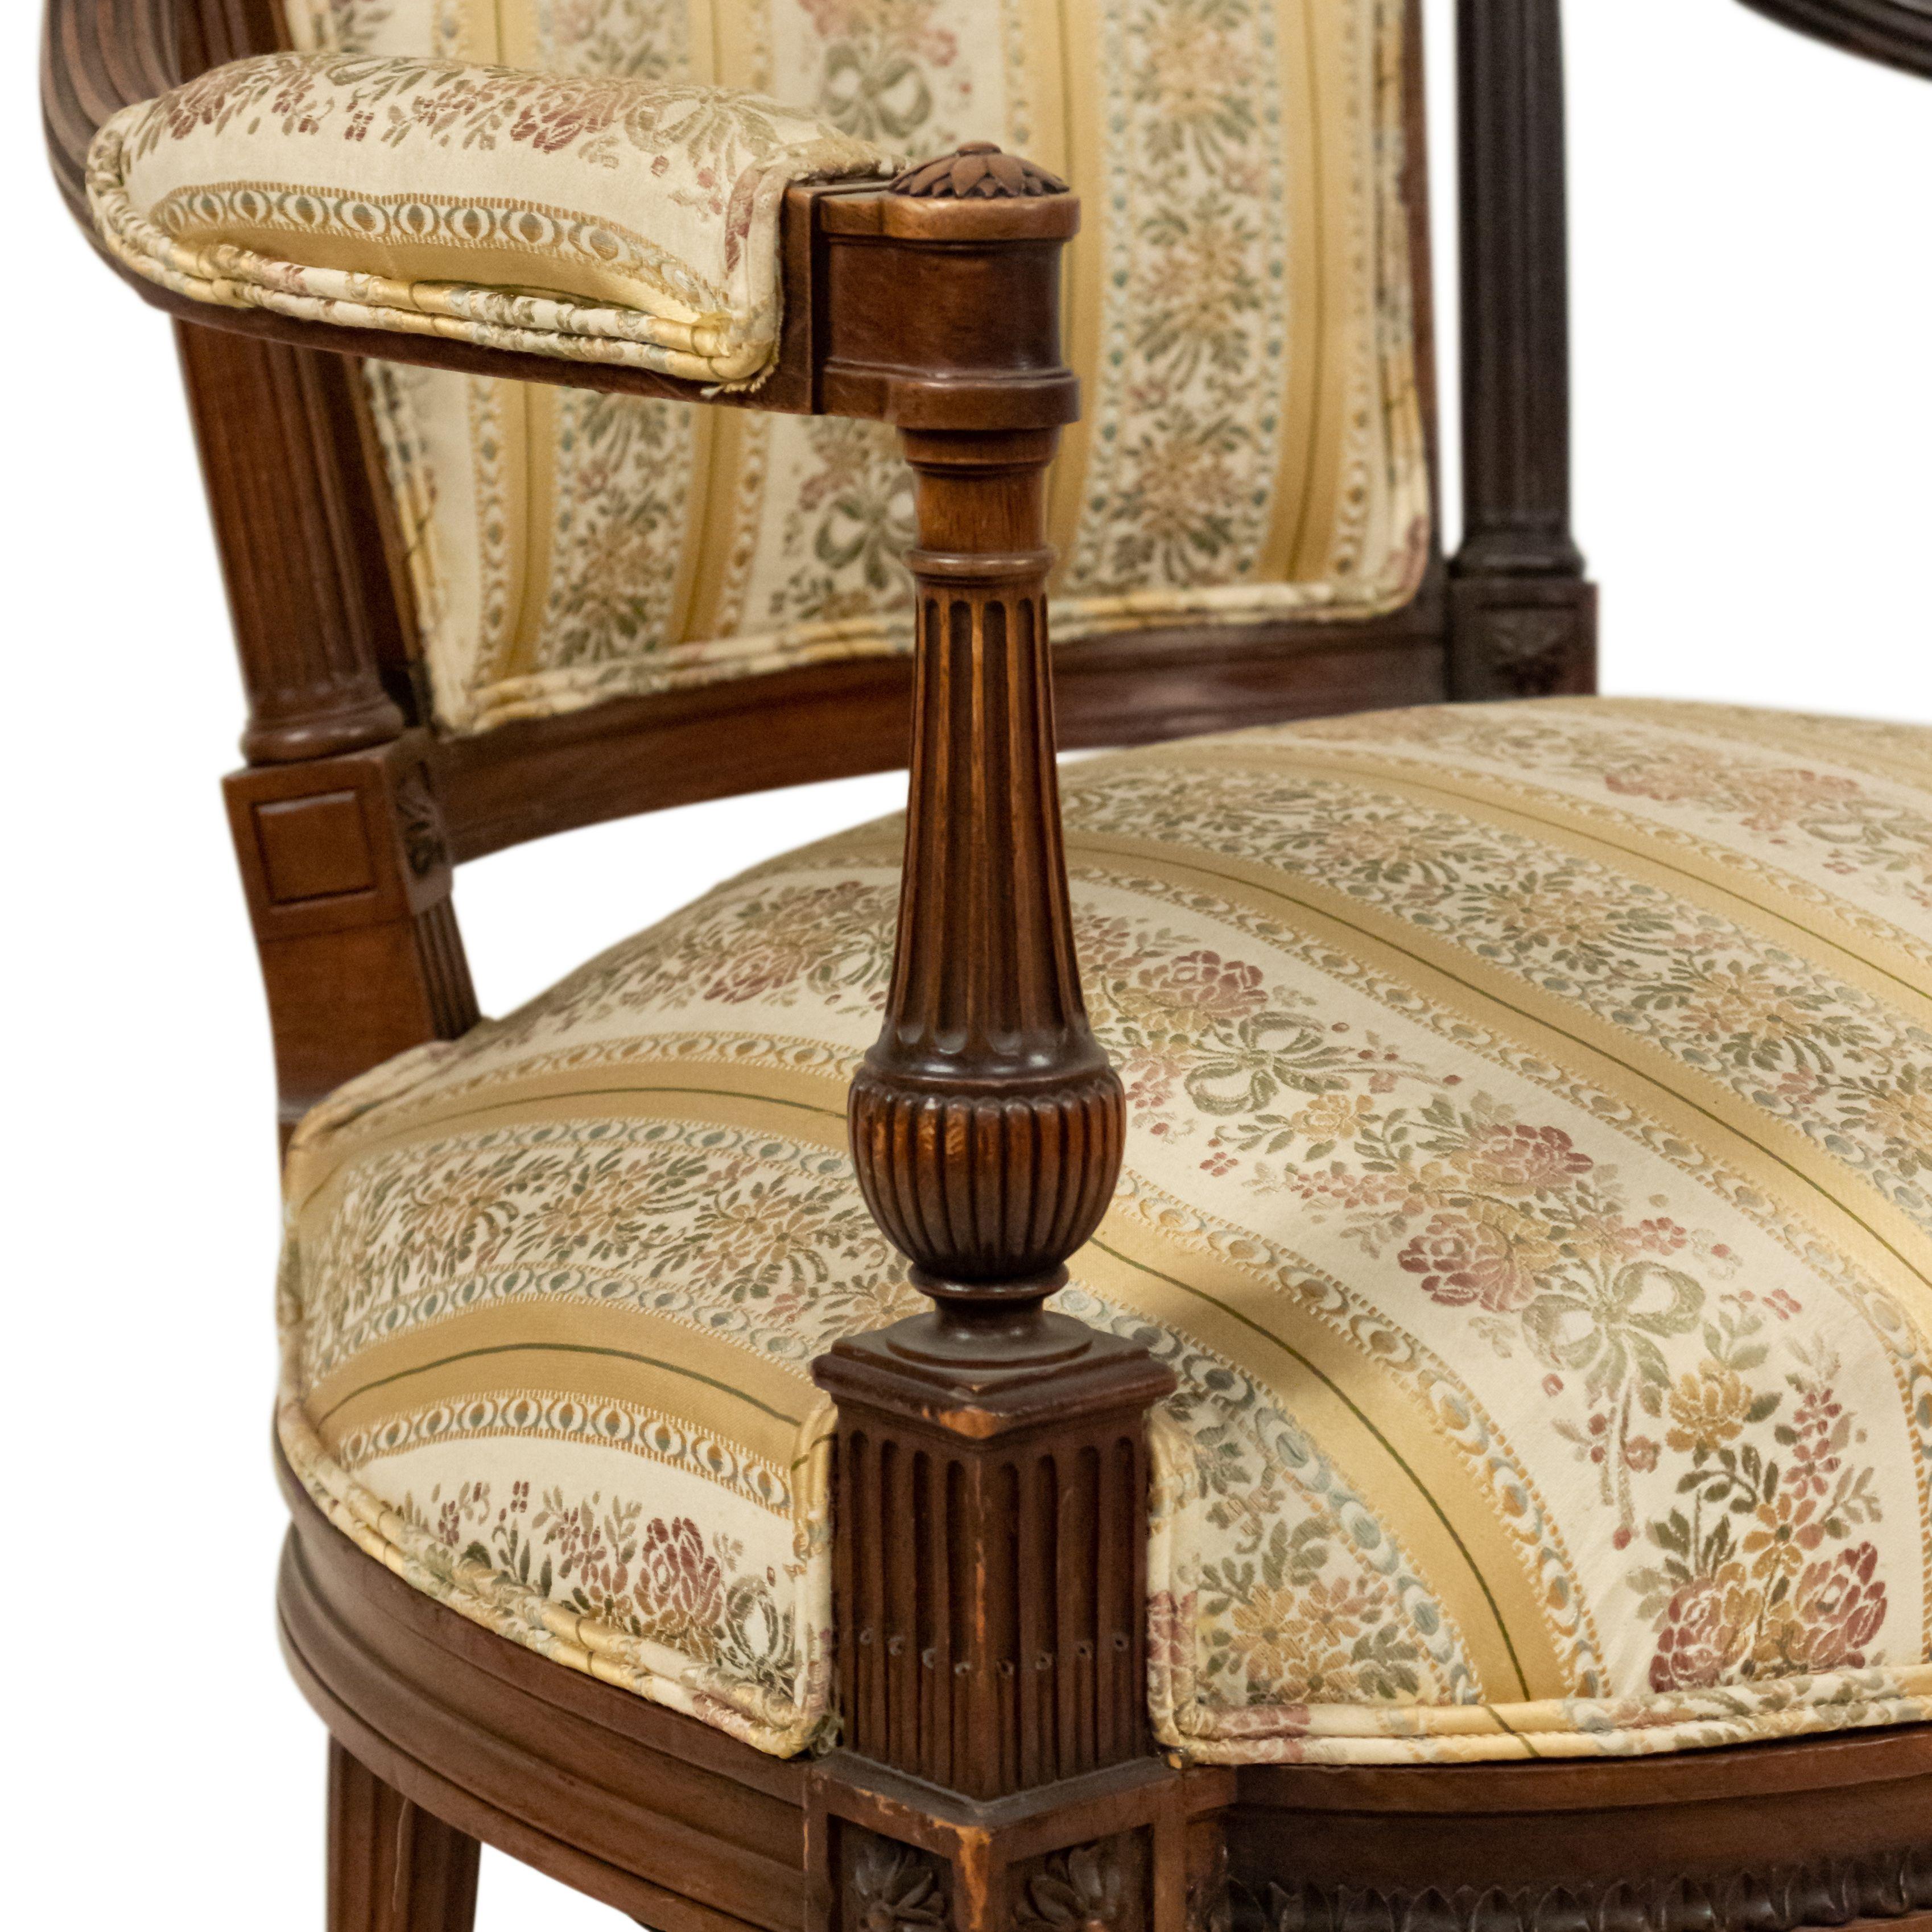 4 Armlehnstühle aus Nussbaum im französischen Louis XVI-Stil mit gestreifter, gepolsterter Sitzfläche und Rückenlehne. (19/20. Jh.).
 